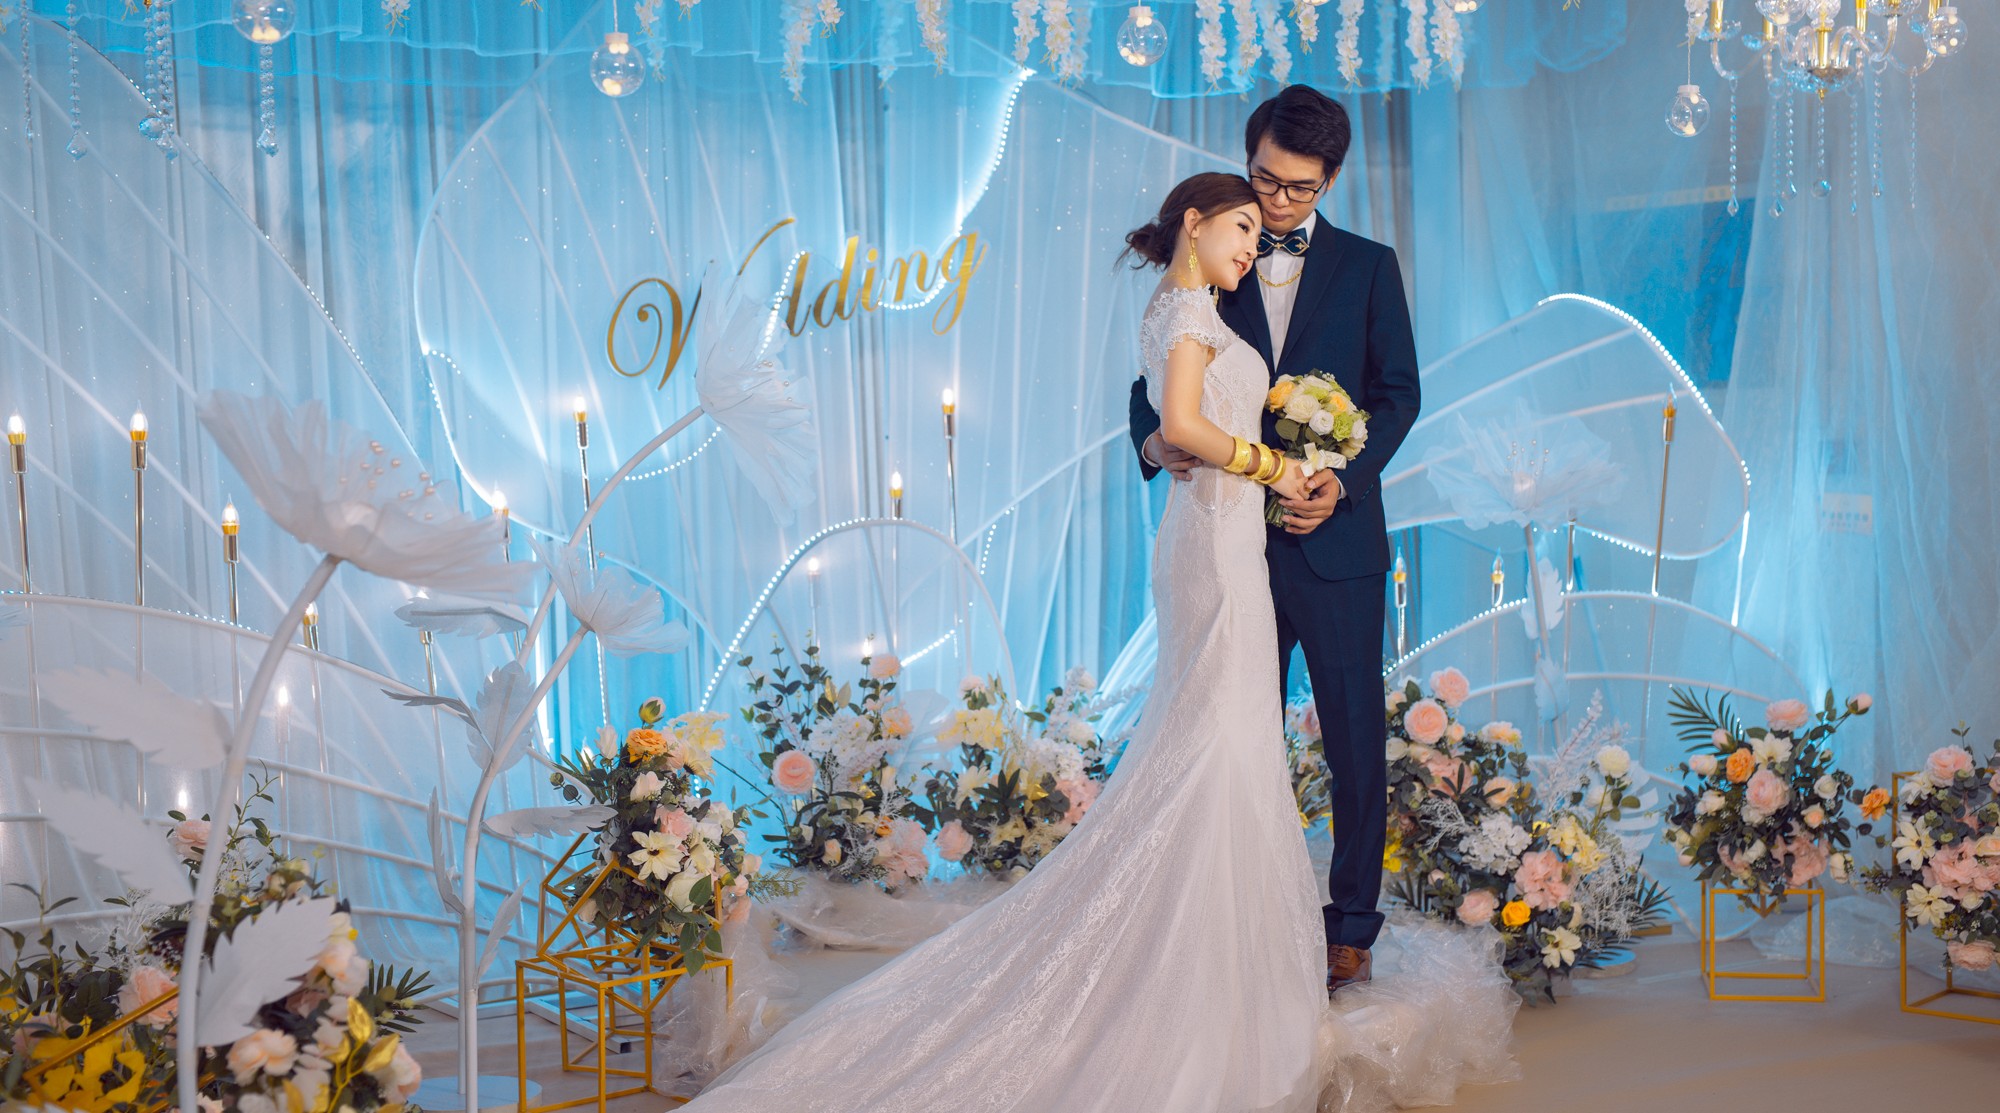 「 Shui + Li 」2019-08-08婚礼 | 时光定格婚礼策划 